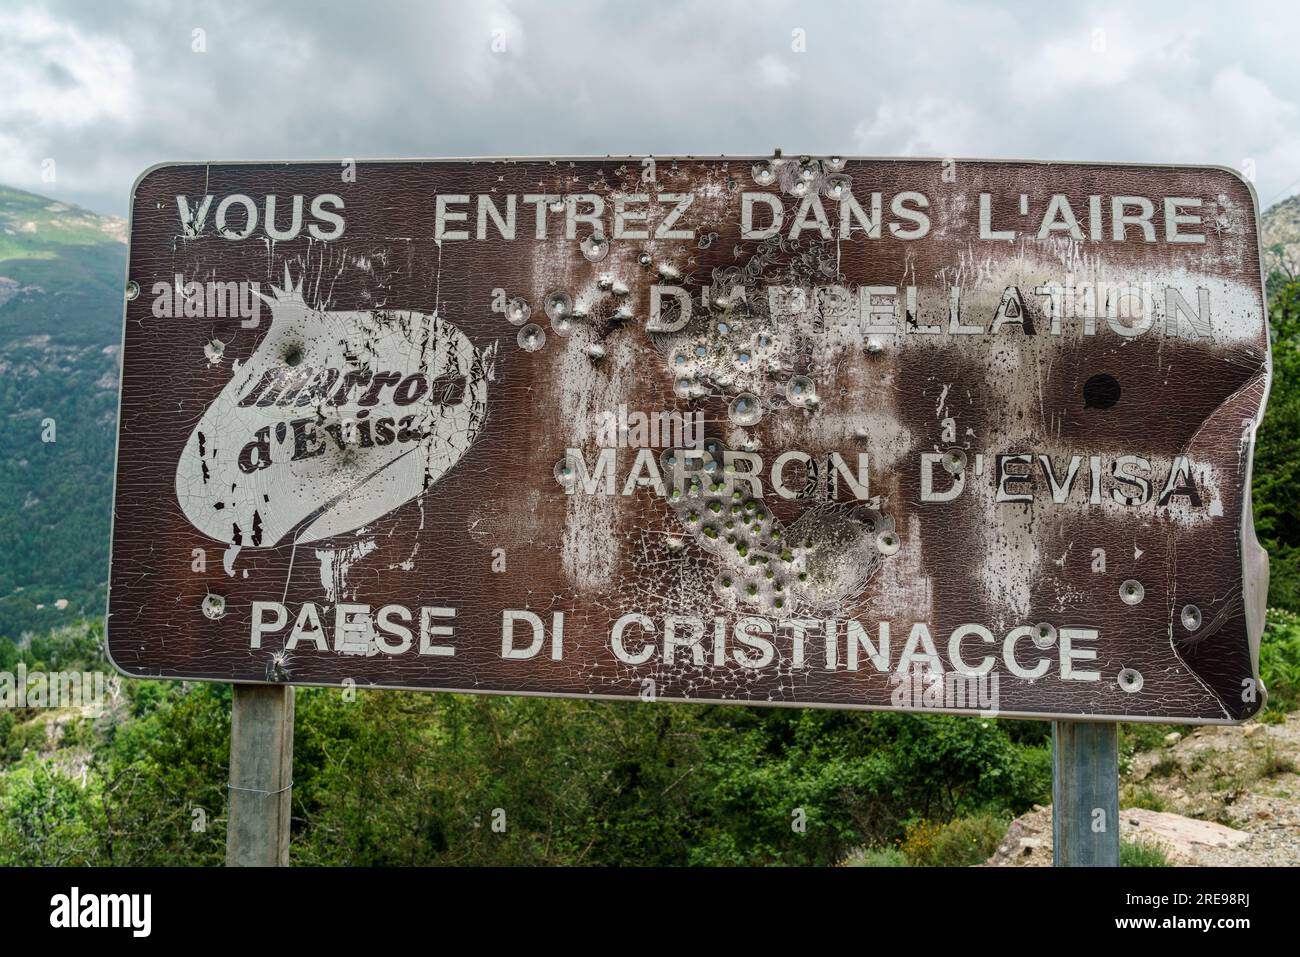 Von Kugeln durchloechertes Schild mit Hinweis auf das Marronengebiet Eivisa auf der Passstrasse von Christinacce, Korsika, Frankreich, Europa Banque D'Images